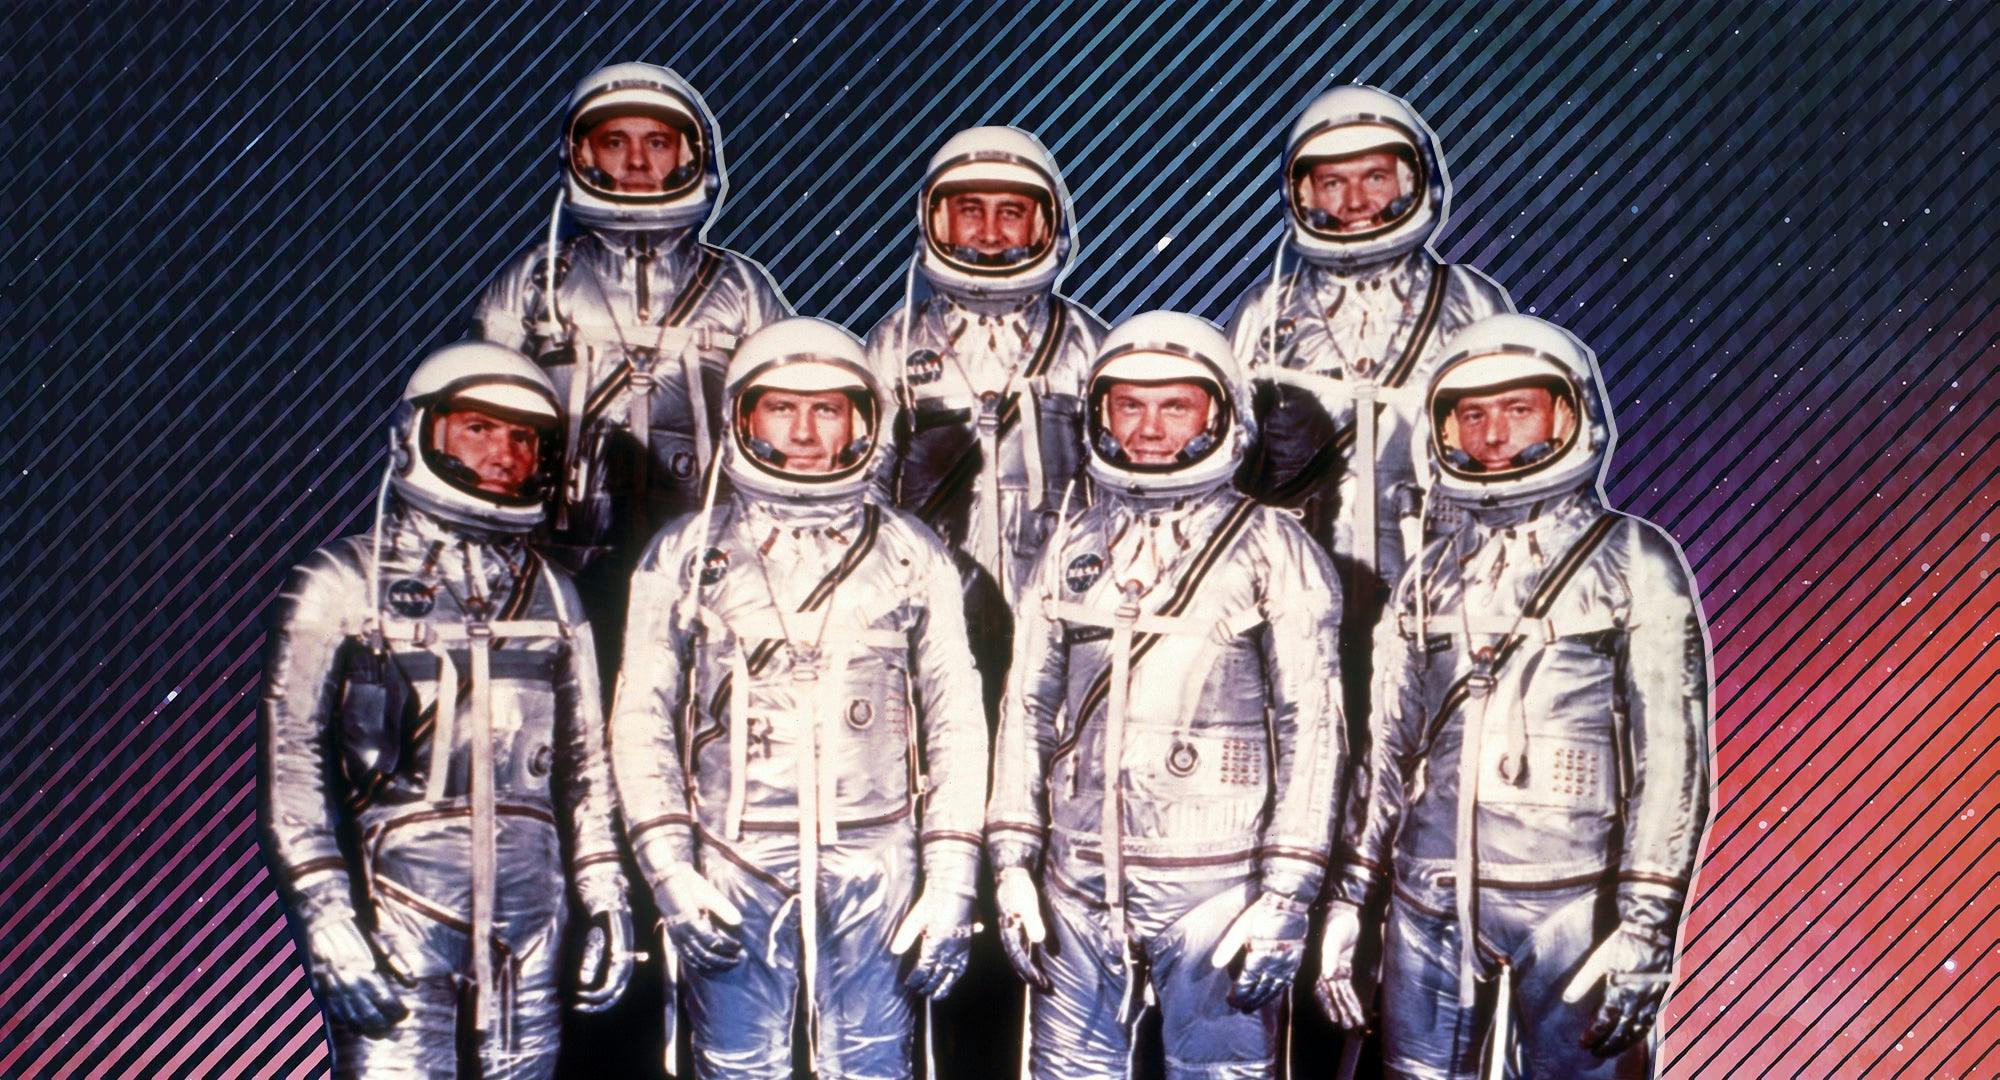 Mercury 7 Crew in 1959